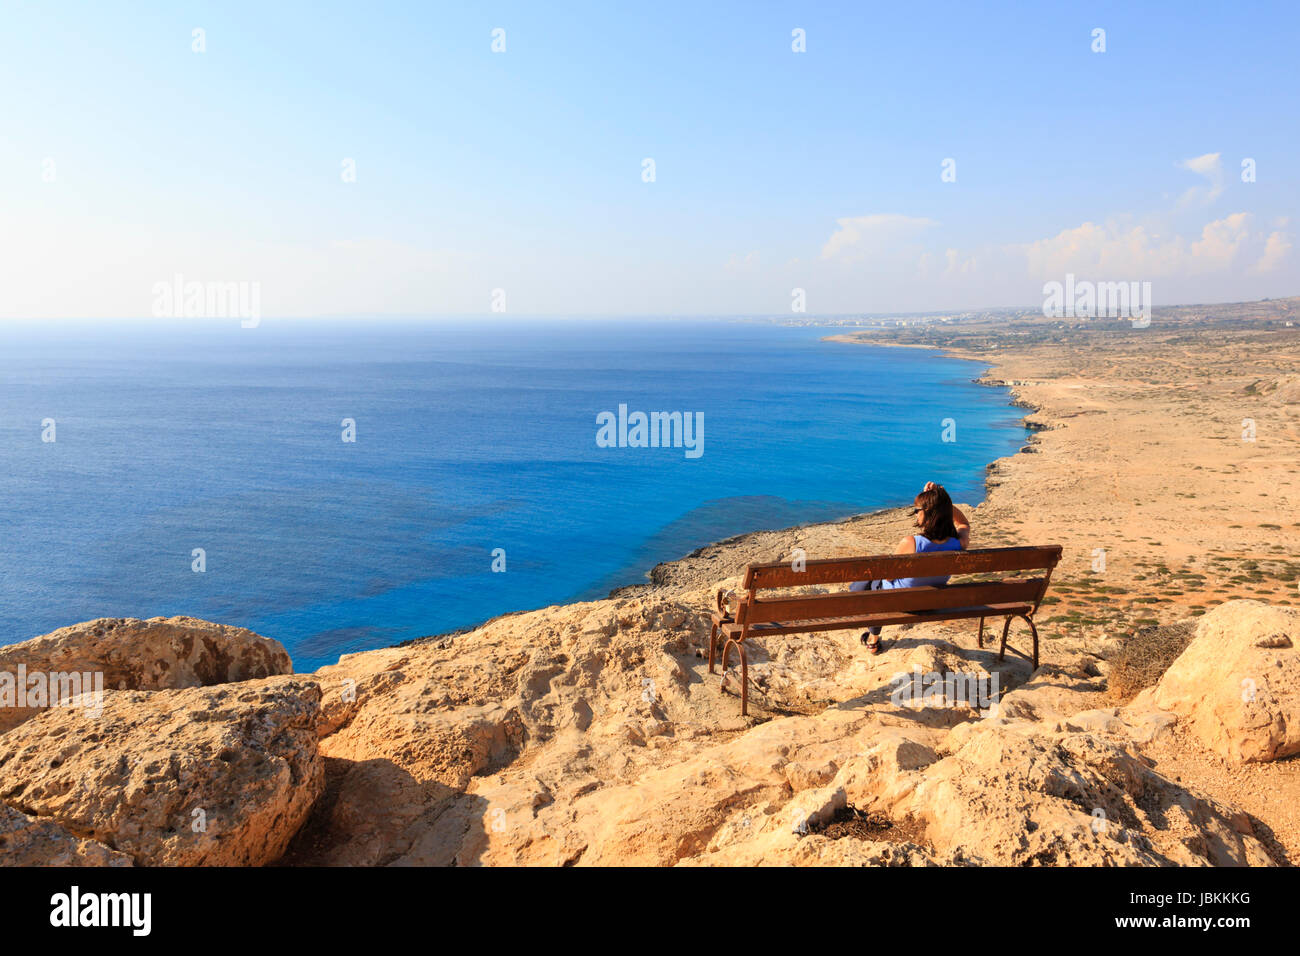 Une seule femme assise sur un banc à Cape Greco falaise donnant sur la mer Méditerranée vers Ayia Napa au loin. Chypre. Banque D'Images